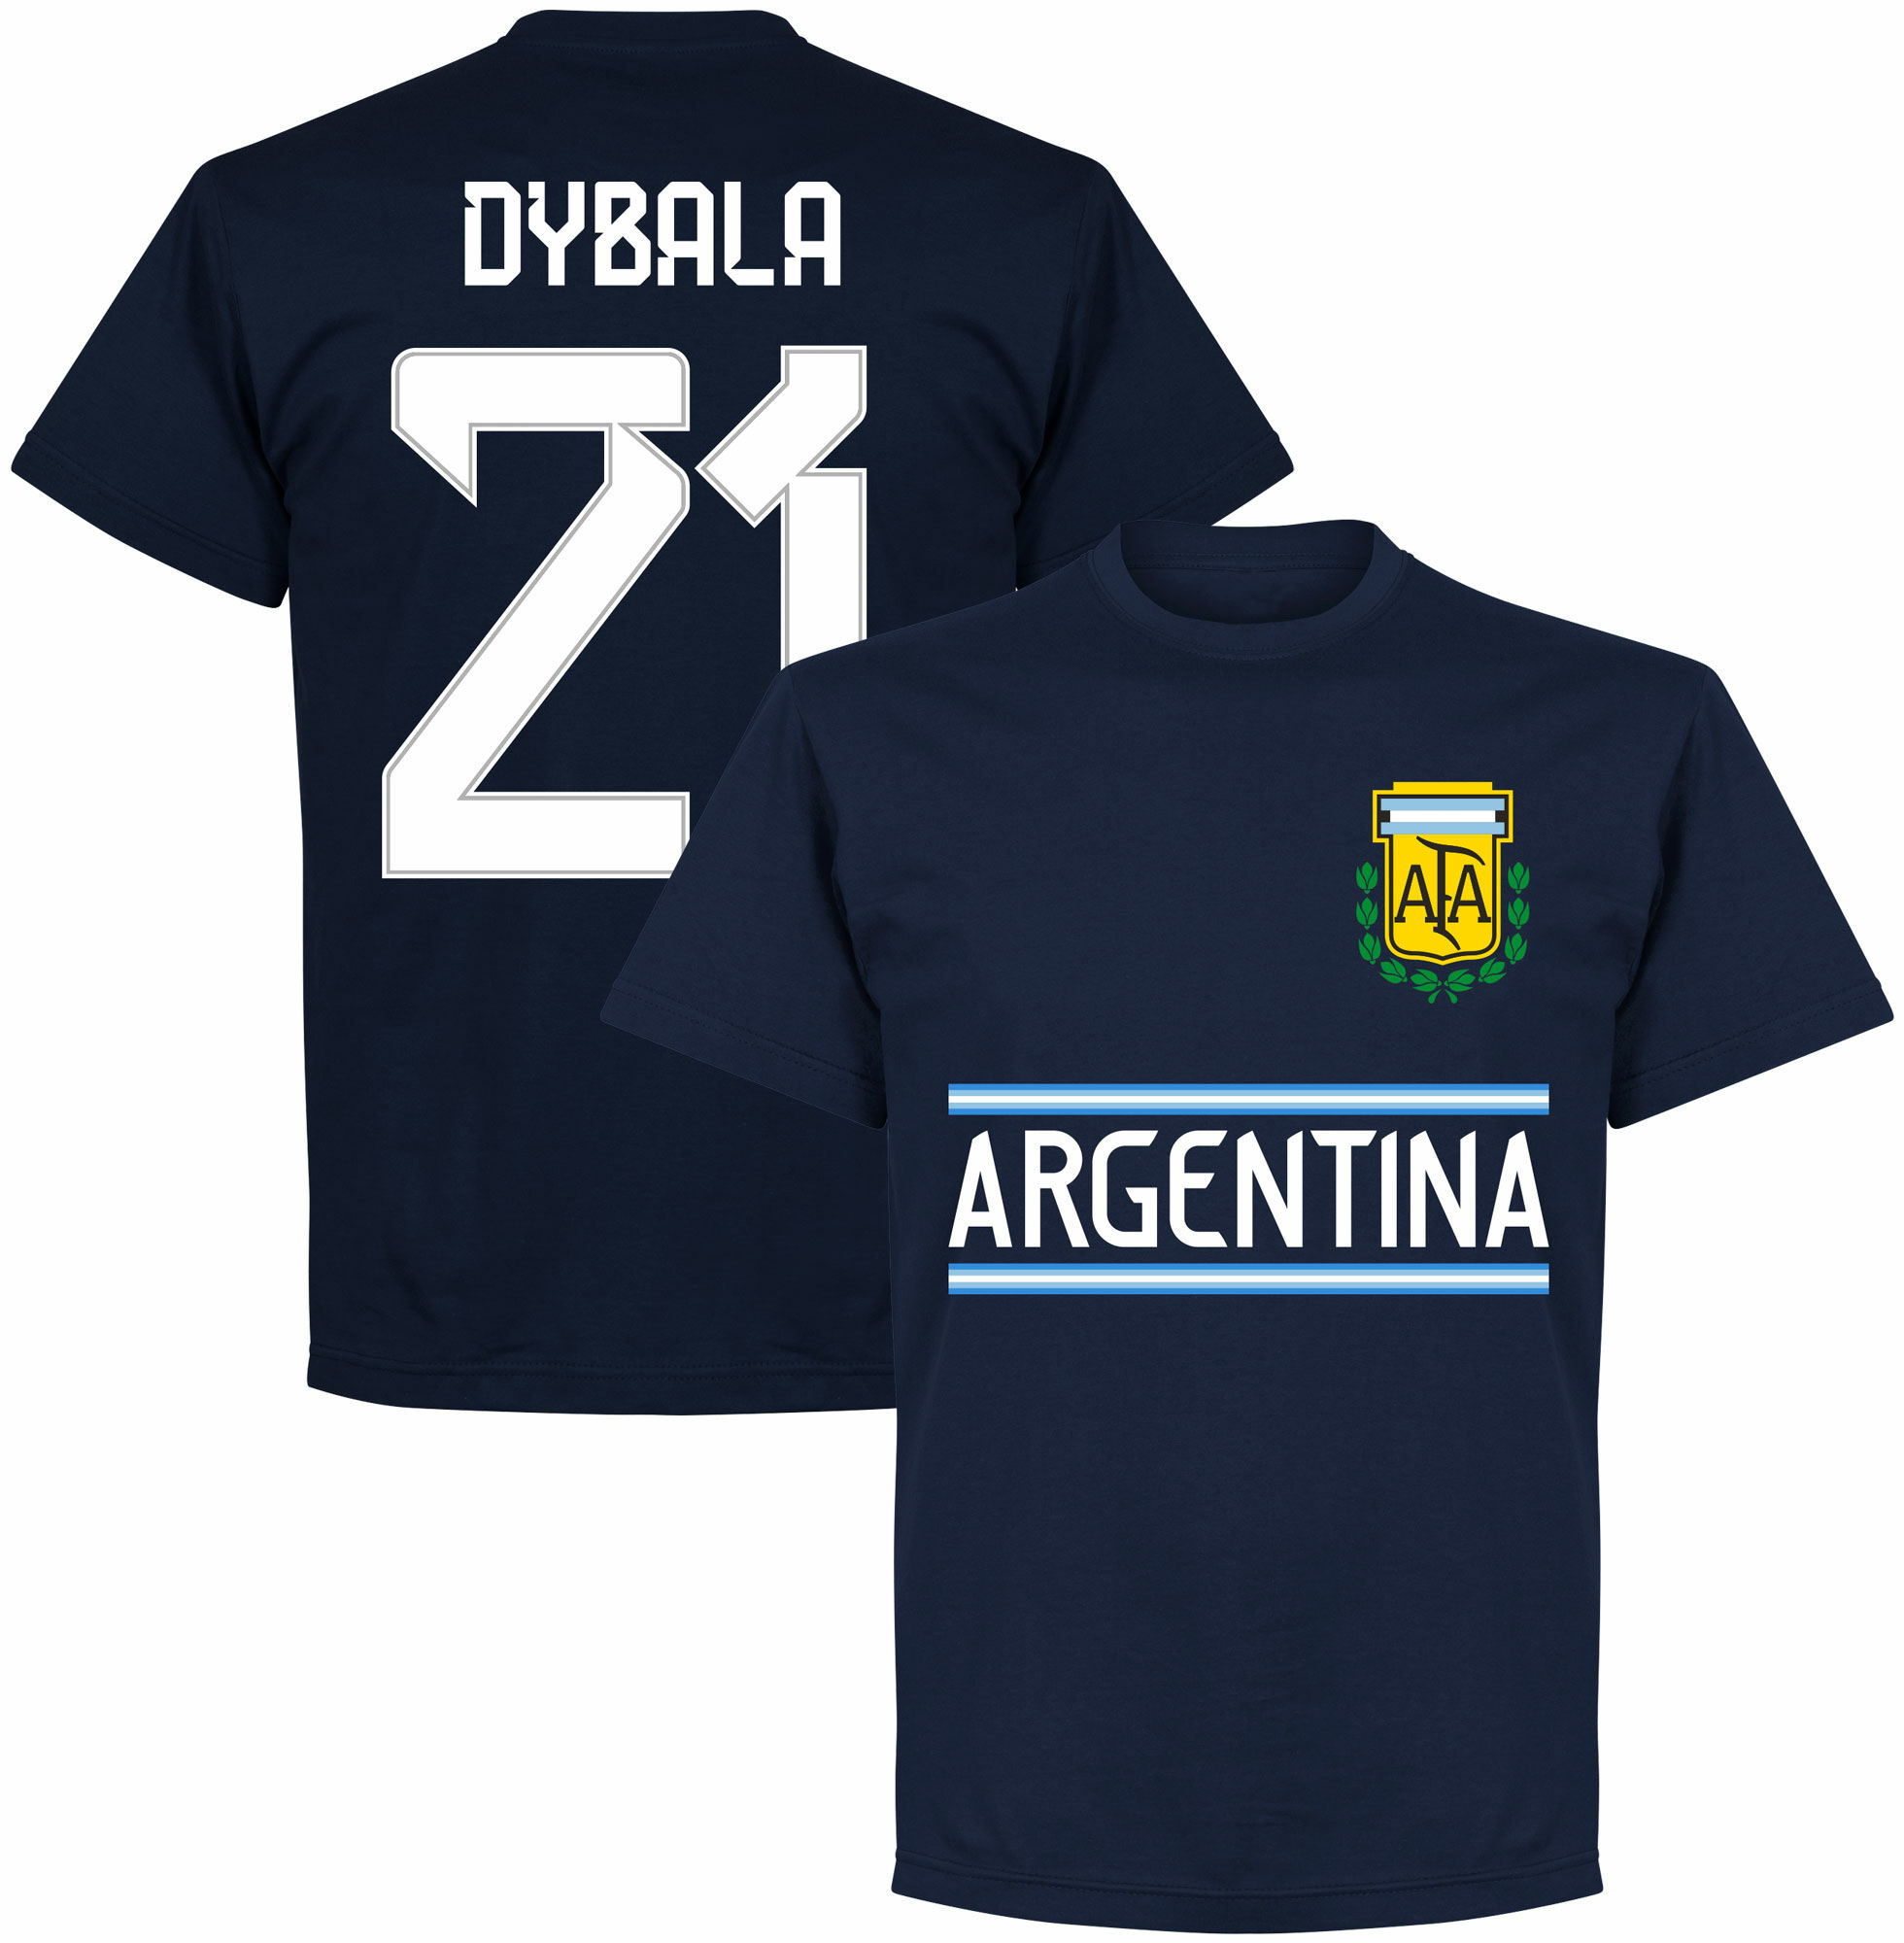 Argentina - Tričko - Paulo Dybala, číslo 21, modré